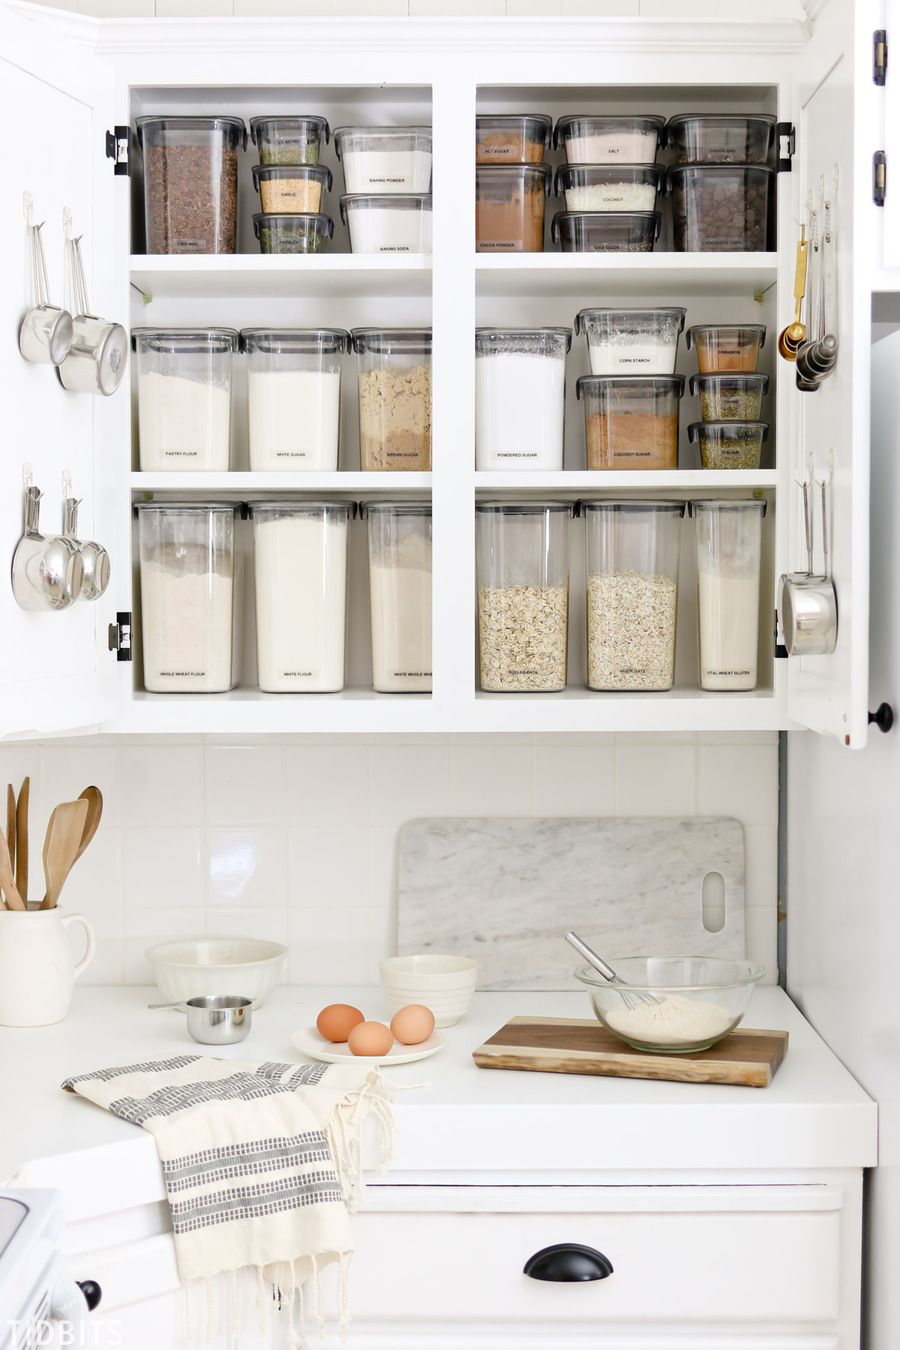 Usa ganchos en las puertas de los muebles de cocina y tendrás un lugar para colgar tazas medidoras y otros utensilios. 